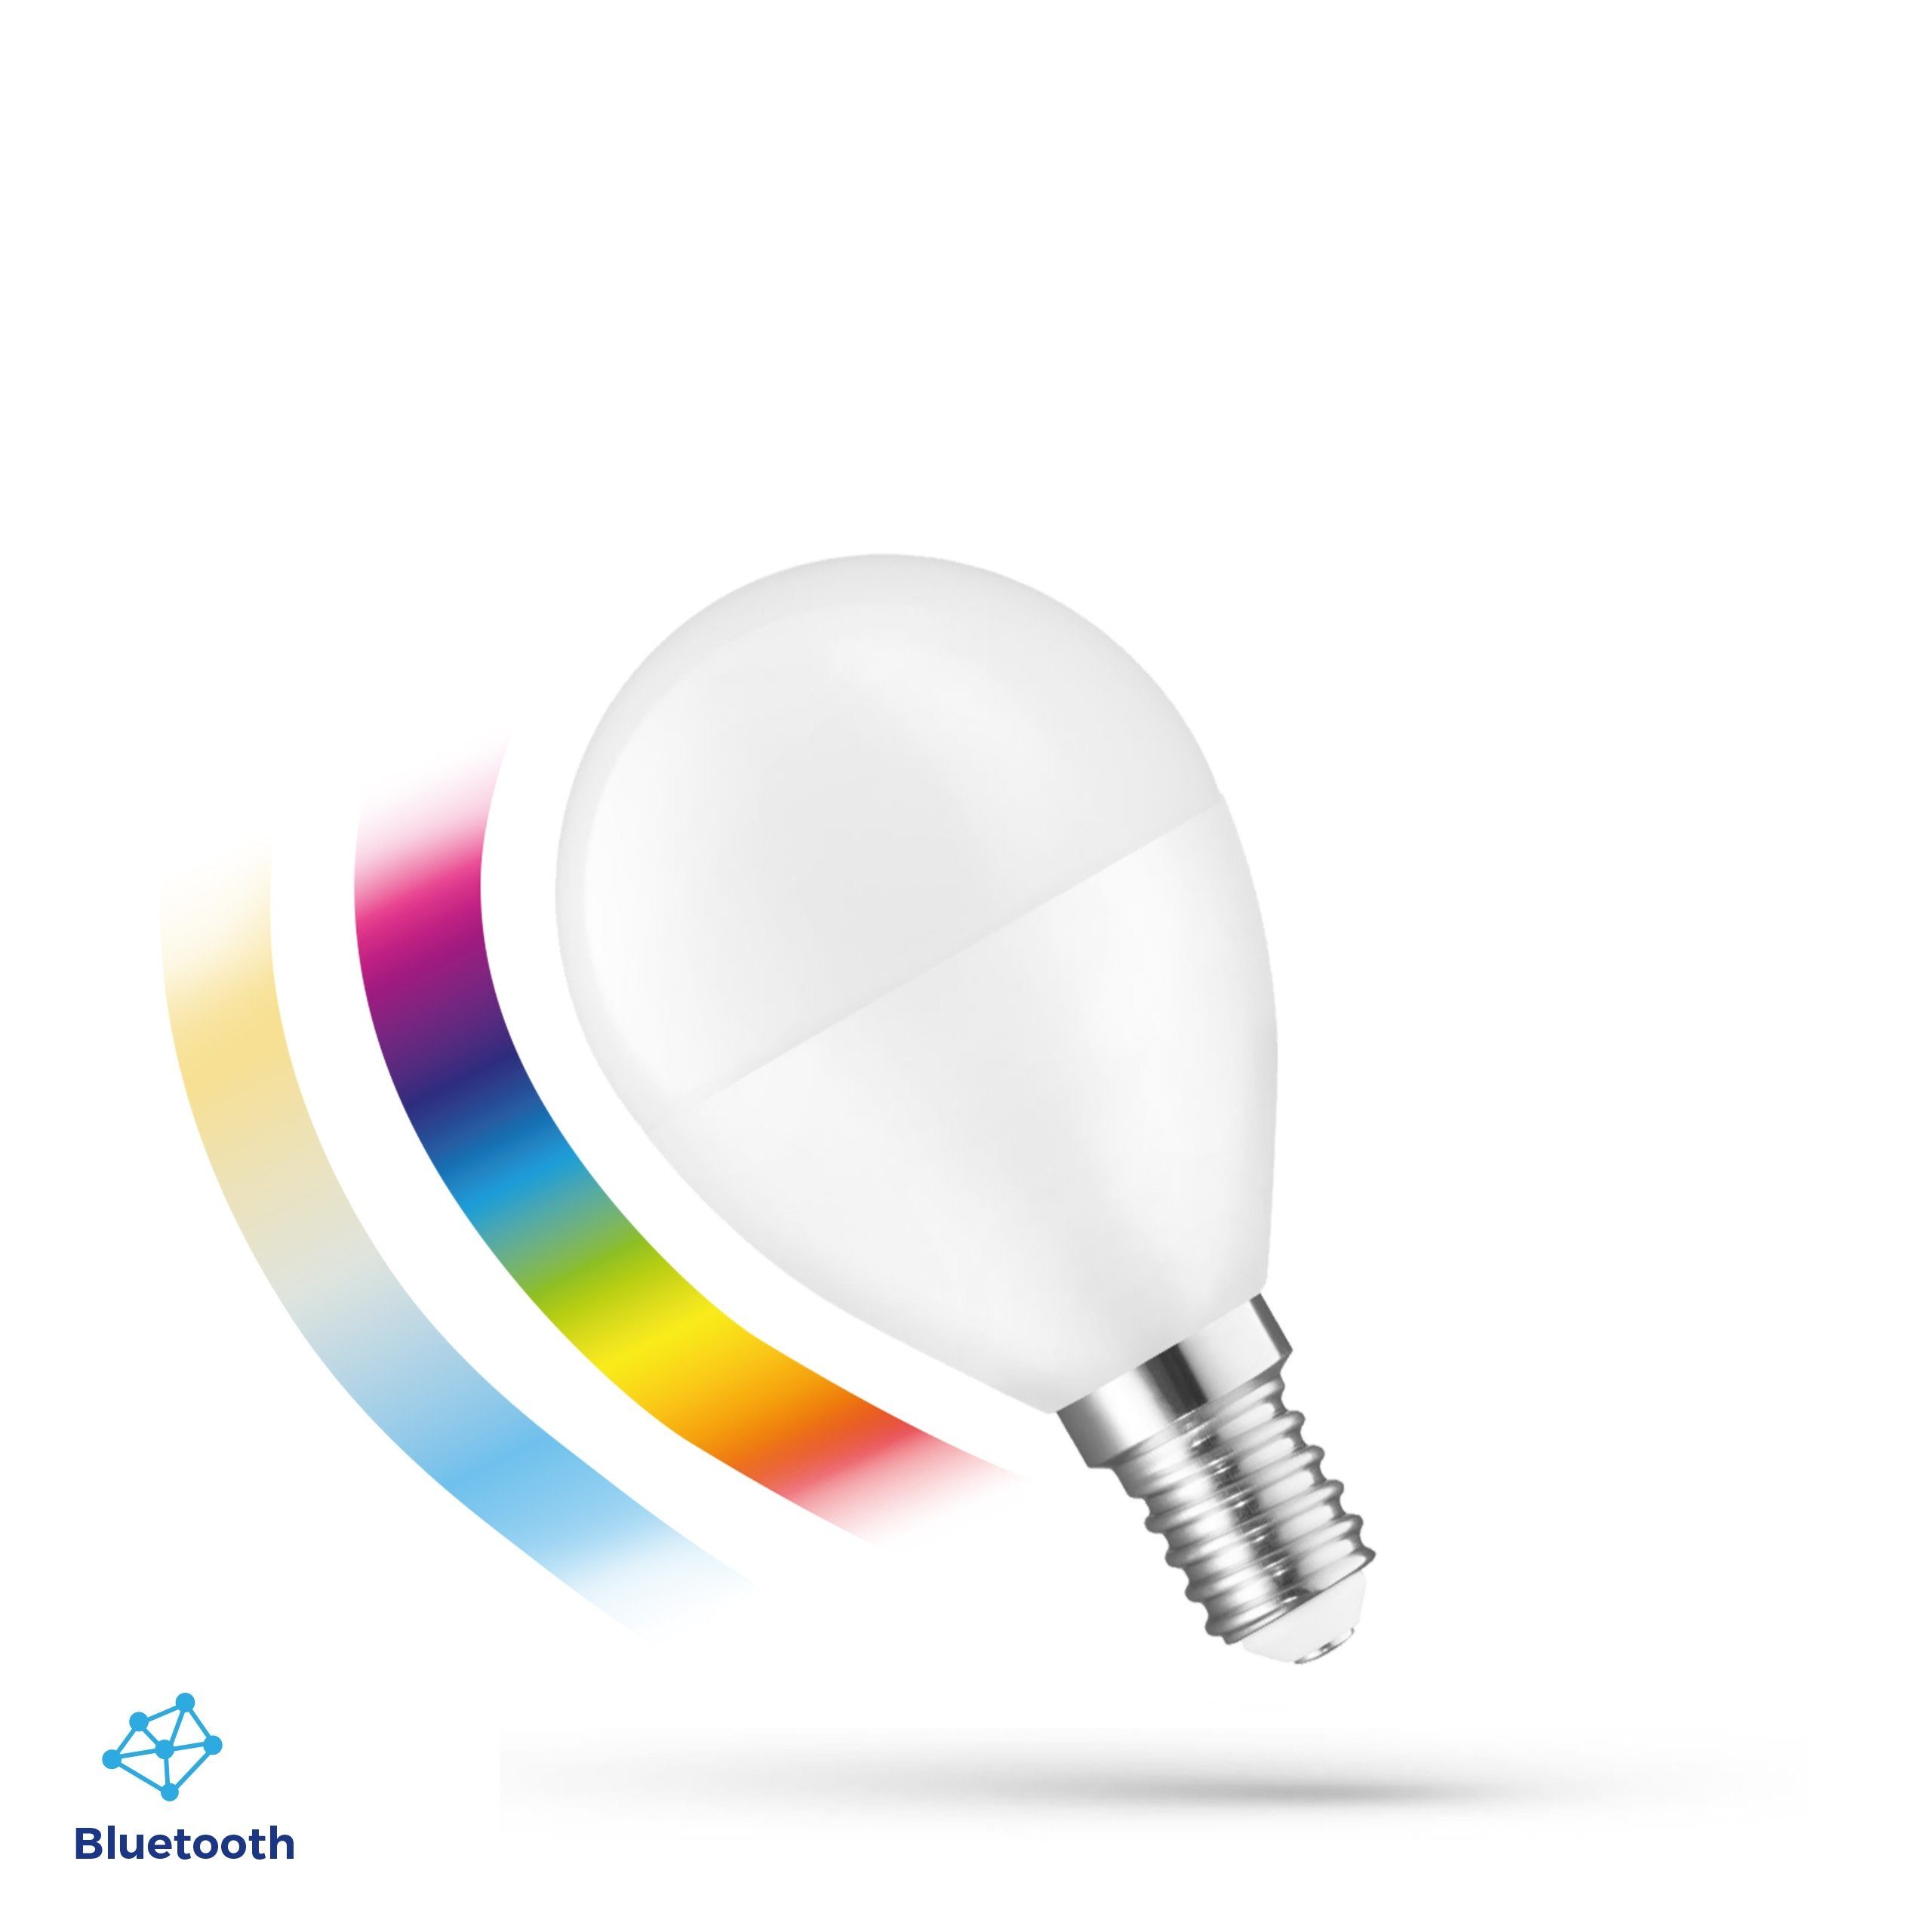 Spectrum SMART LED-Leuchtmittel LED E14 G45 EASY SMART APP 4,9W=42W bunt BLUETOOTH 2700K-6000K DIMMBAR, E14, Farbwechsler, CCT-Farbtemperatursteuerung - warmweiß bis tageslichtweiß, RGB